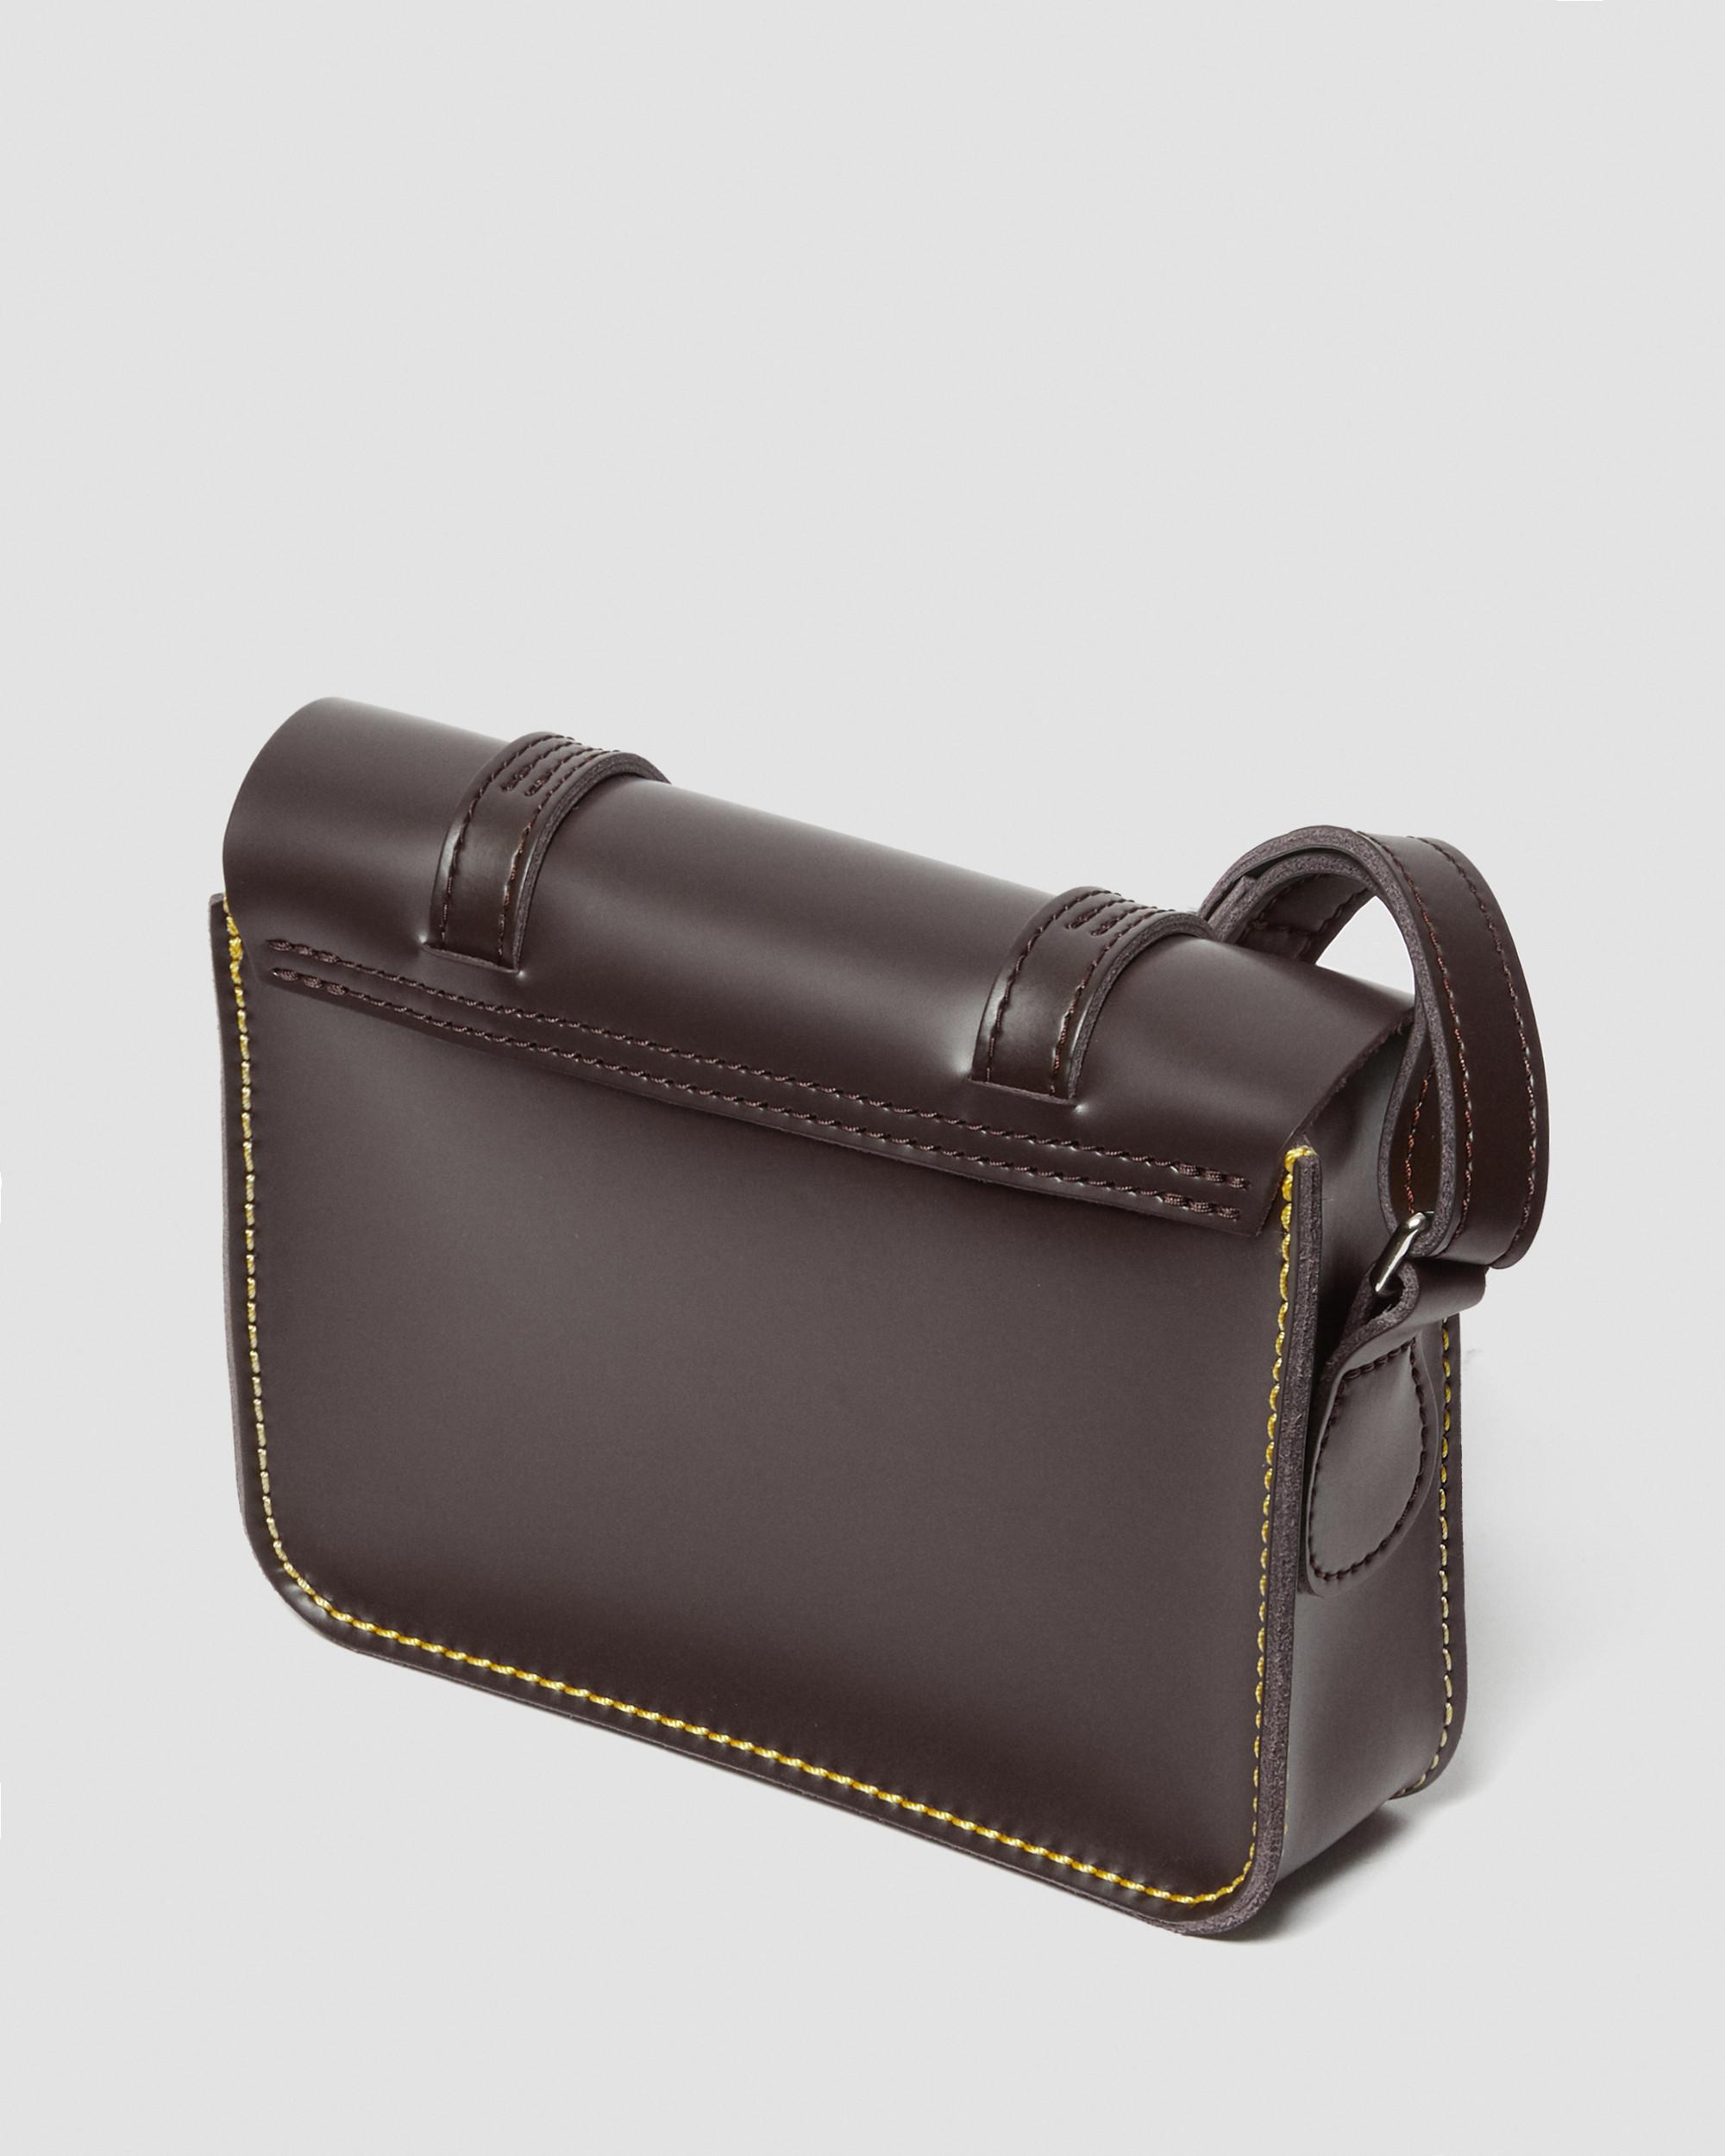 Handbag Dr. Martens 7 Leather Satchel